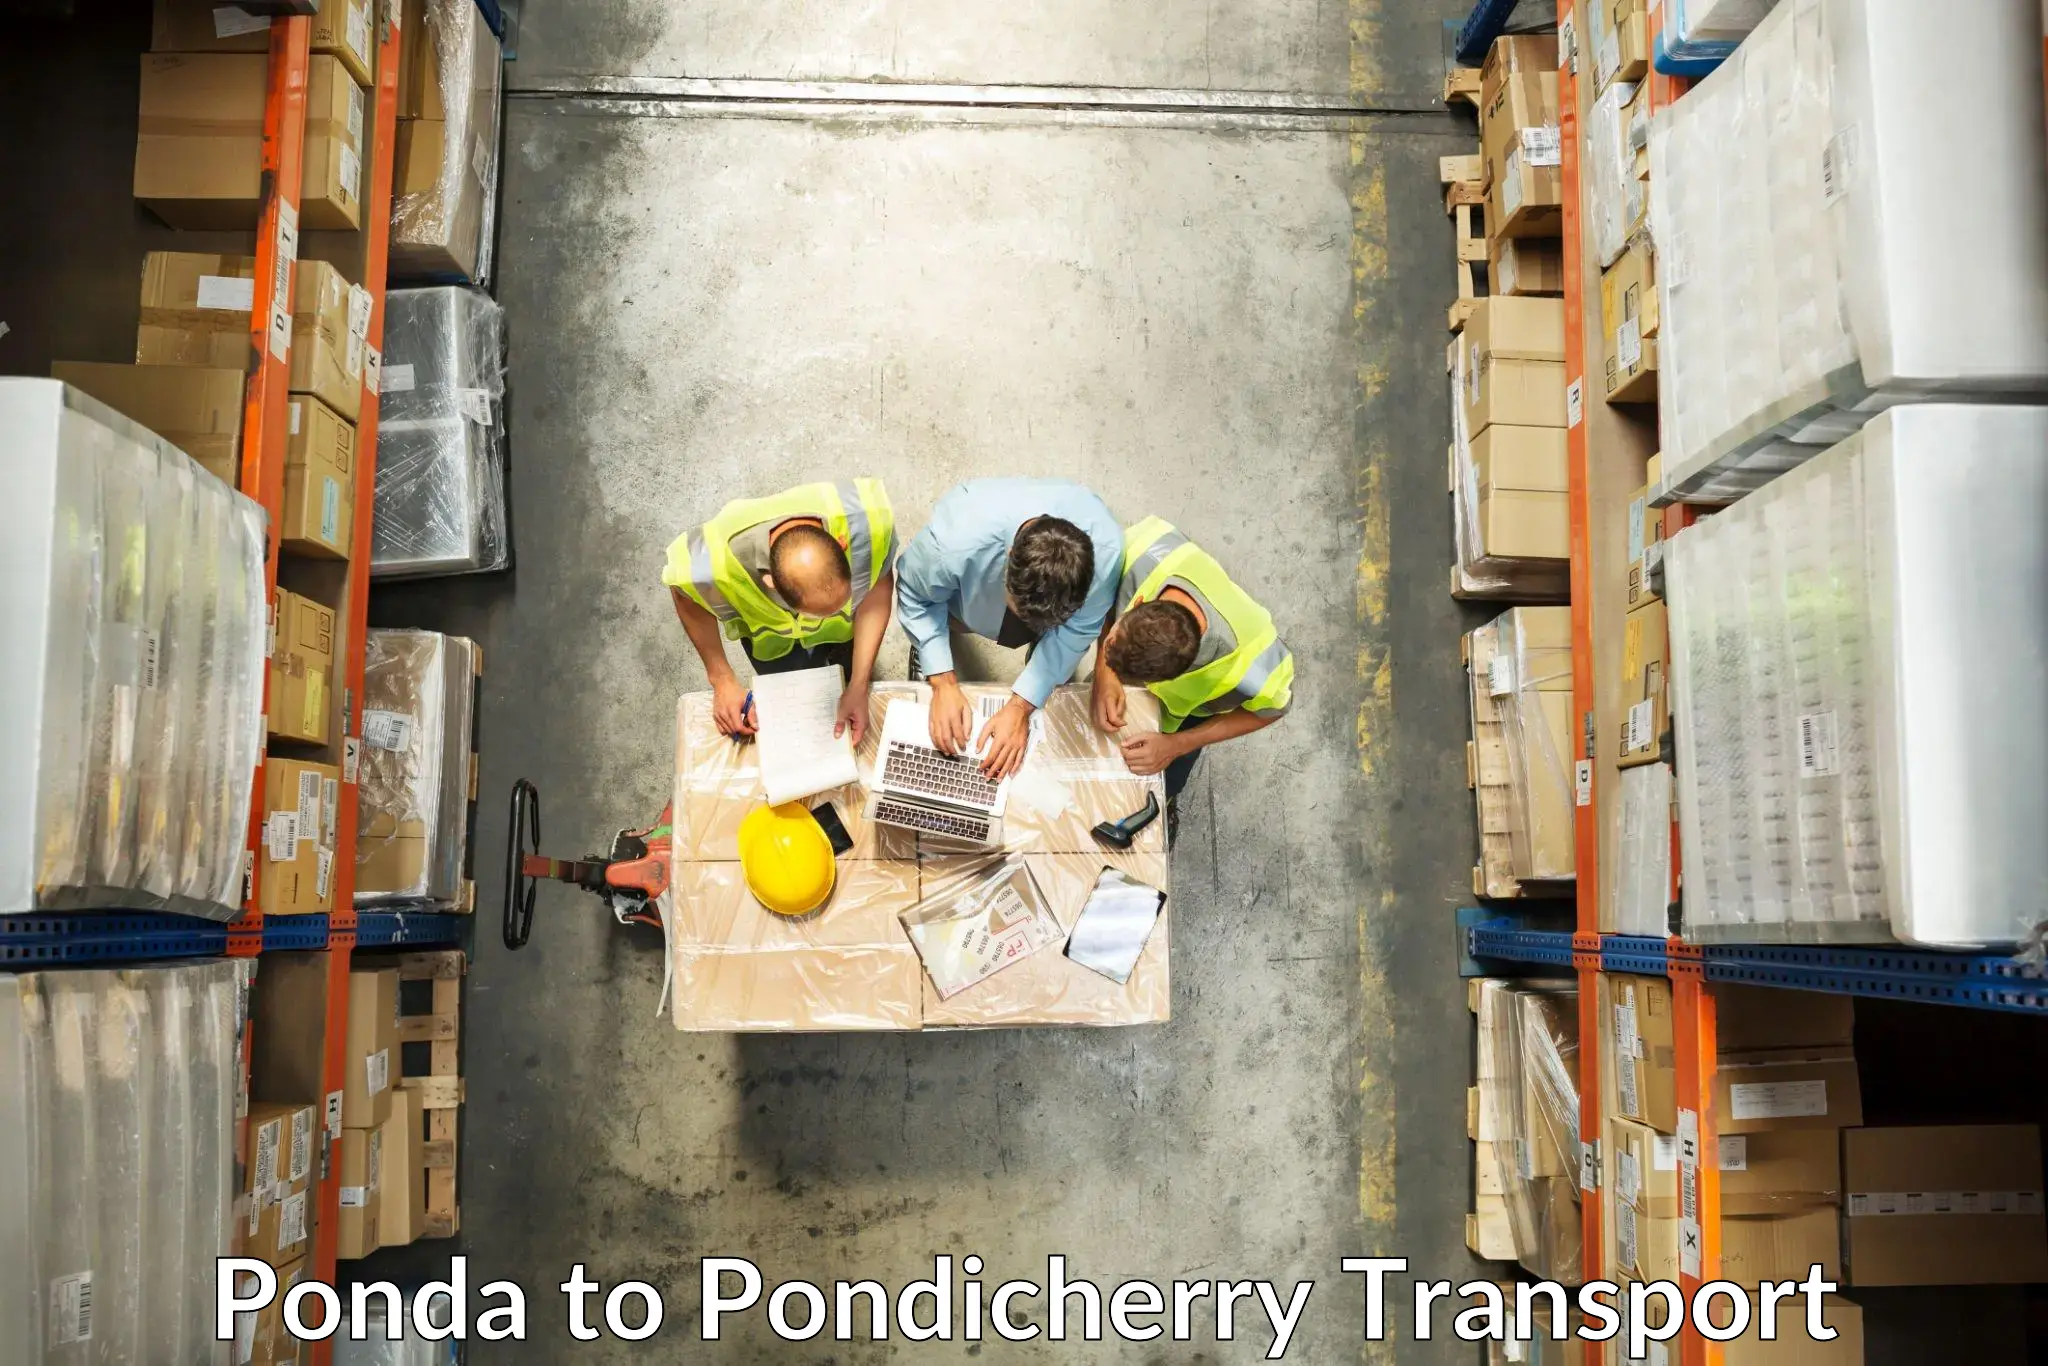 International cargo transportation services Ponda to Pondicherry